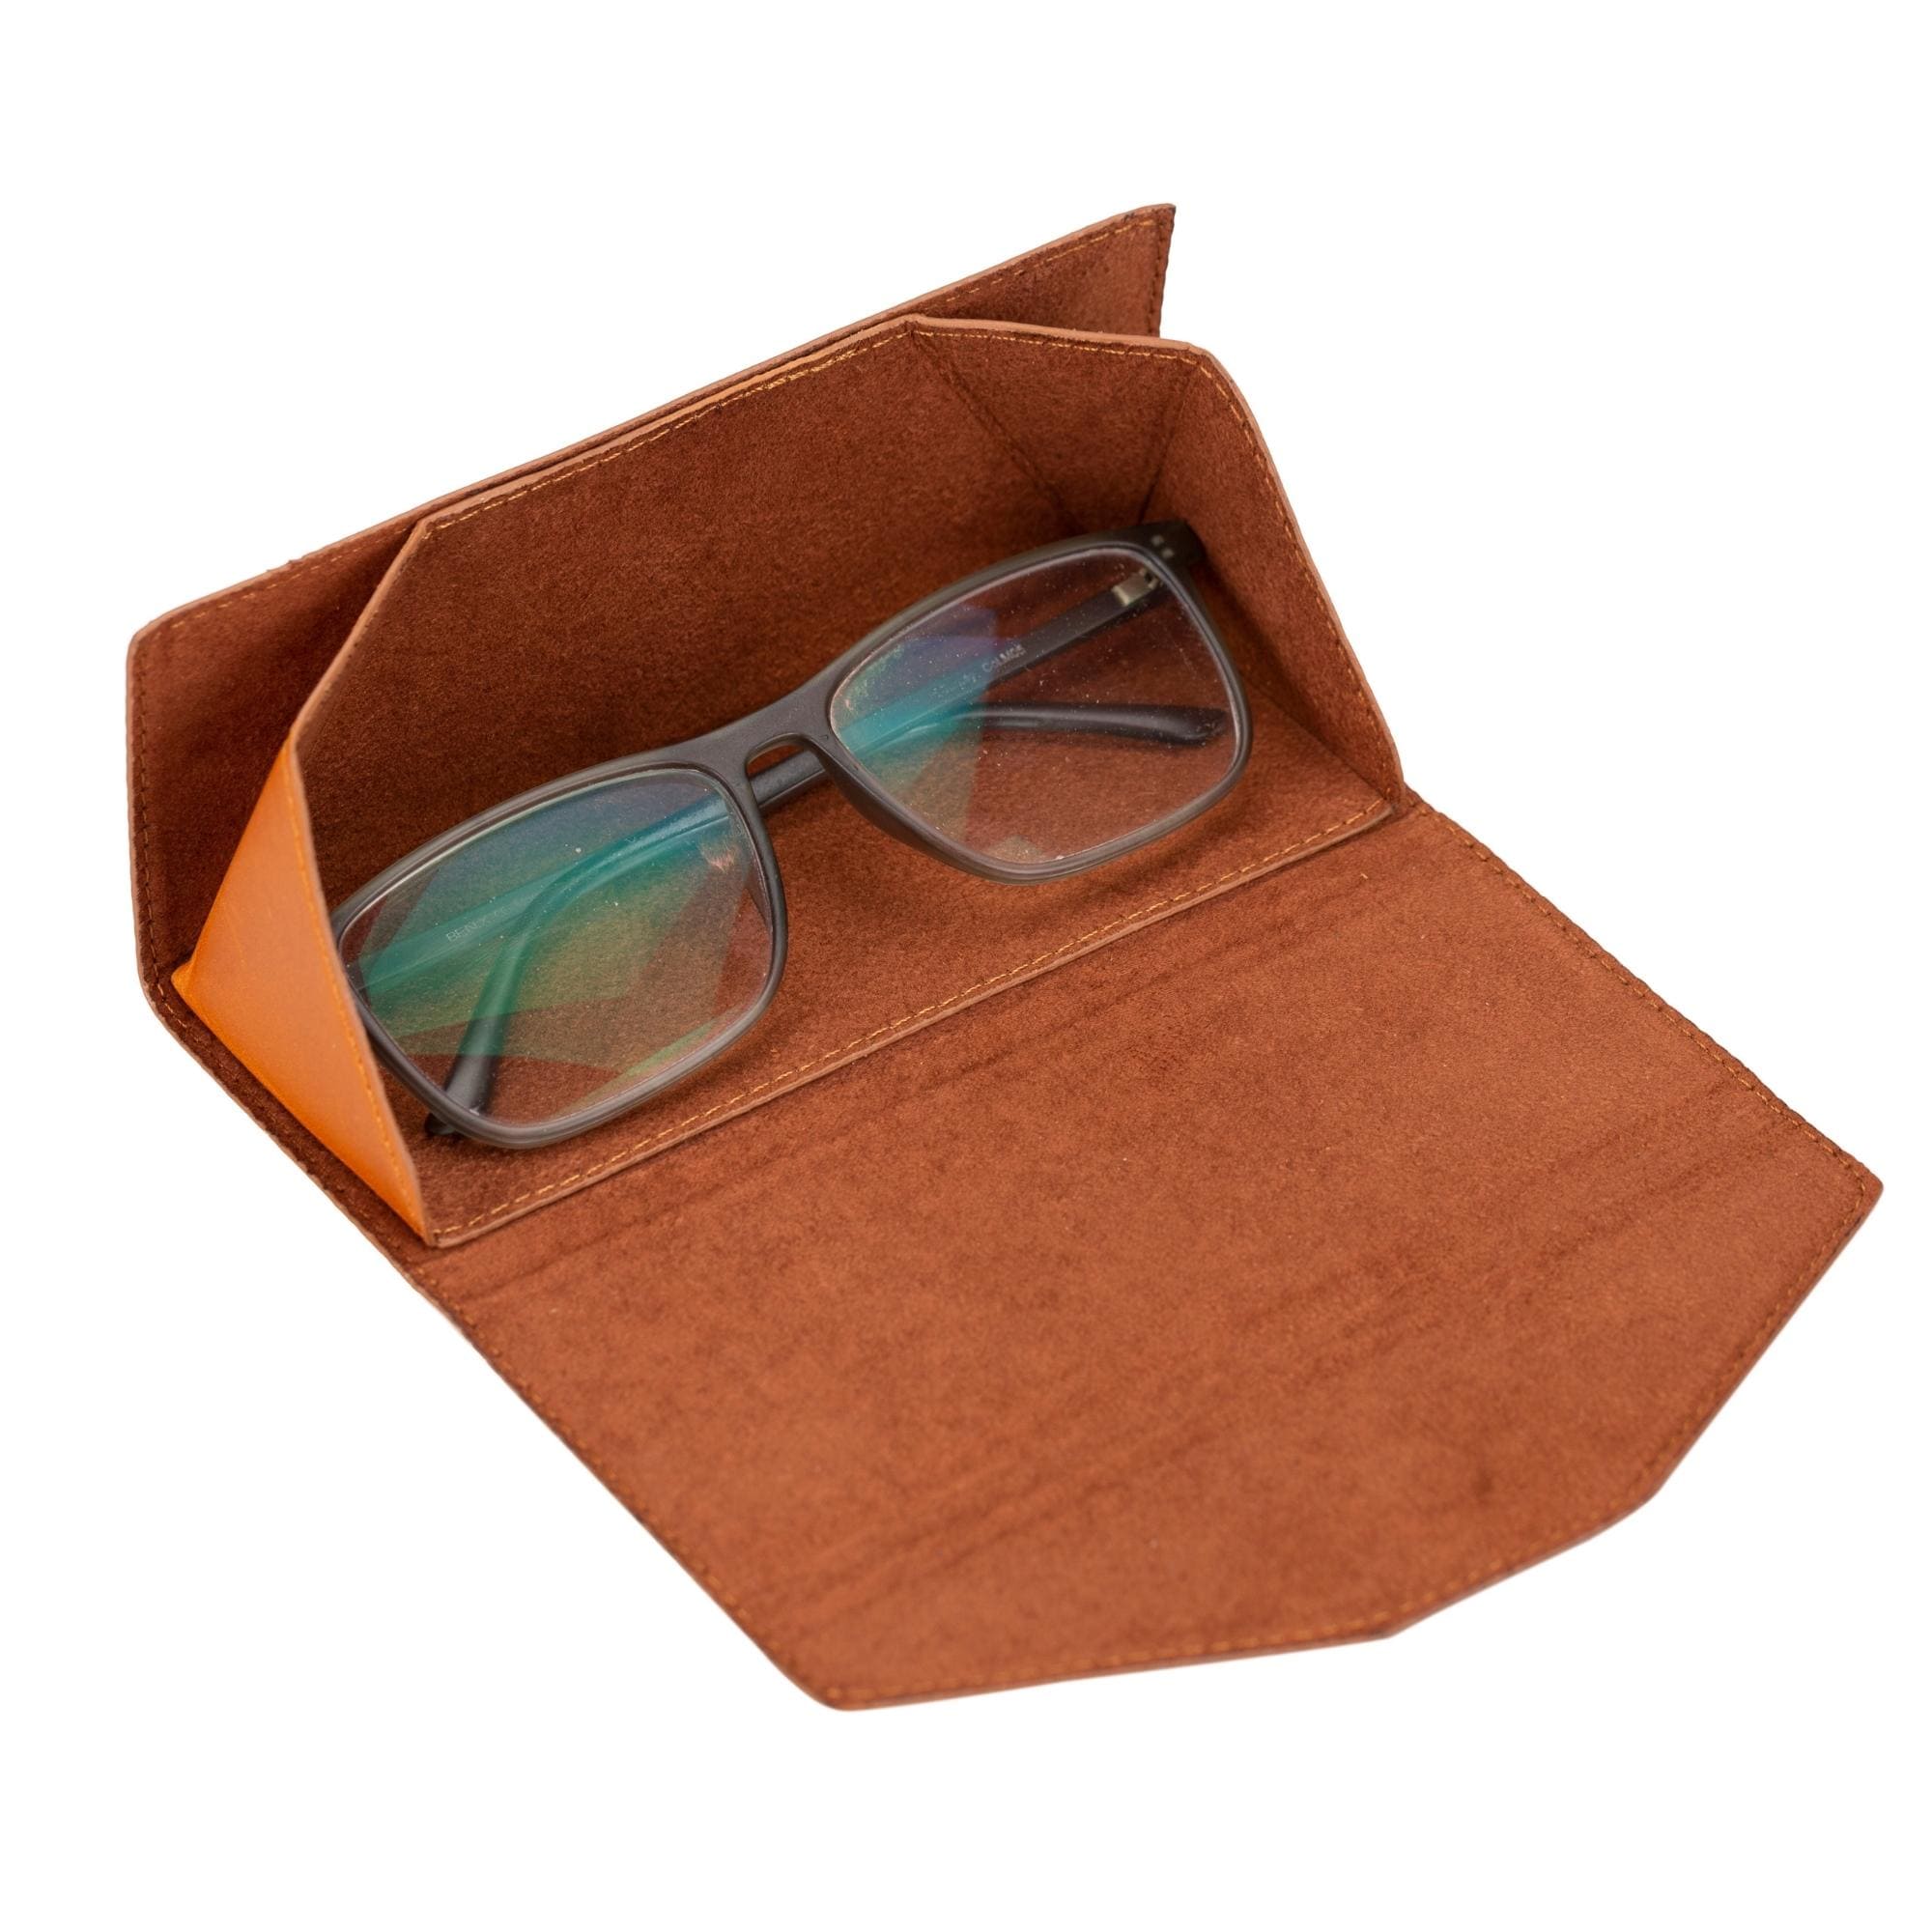 LOUIS VUITTON Empty Sunglasses Navy Blue Case & Orange Box.